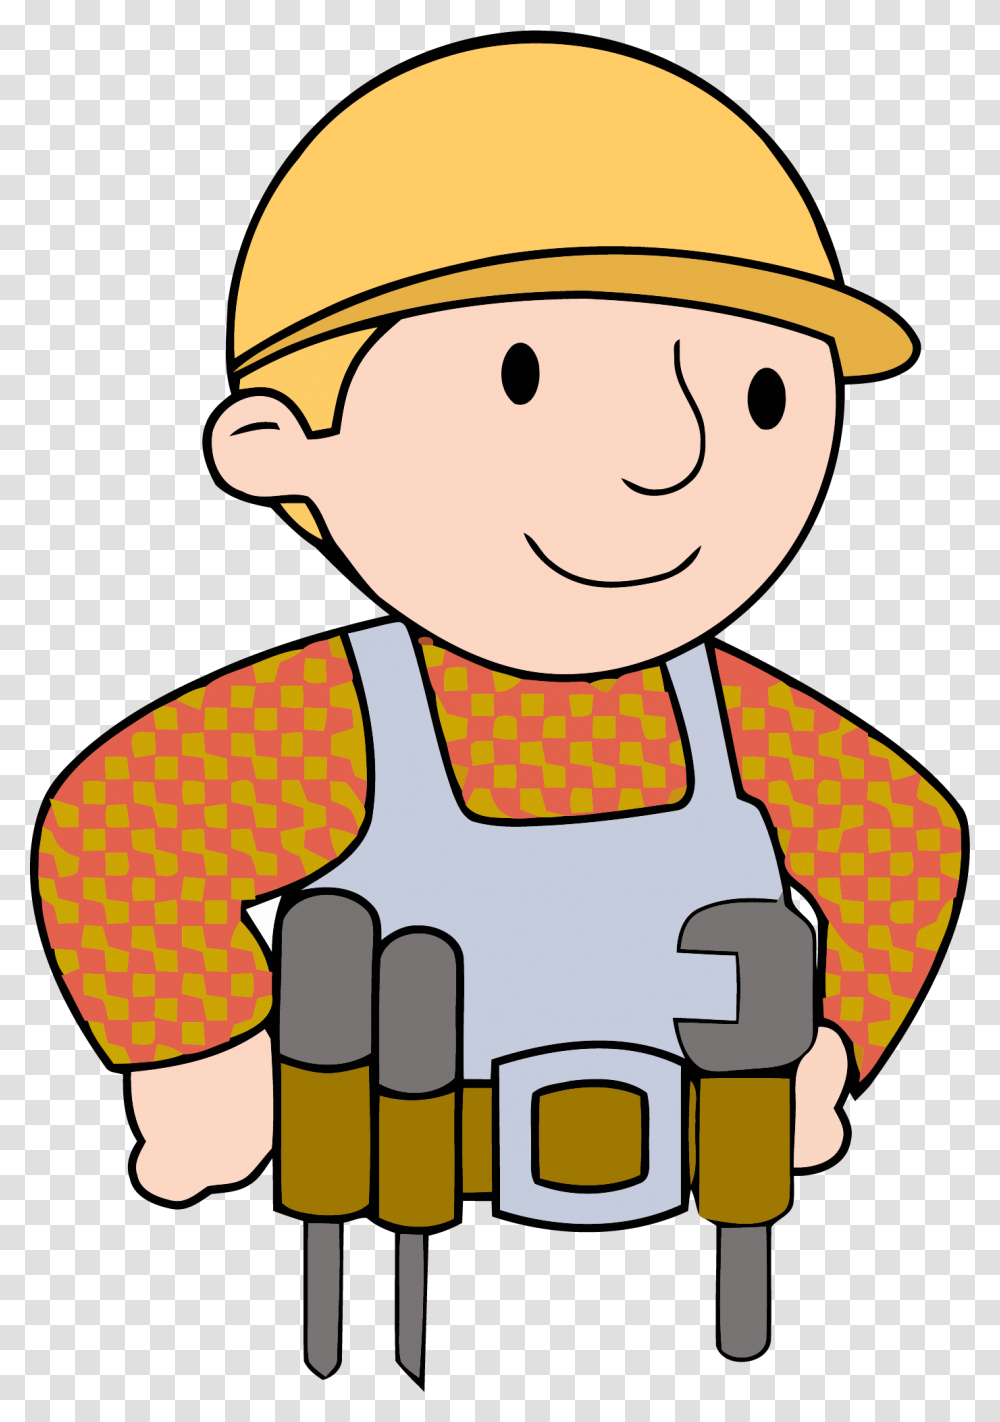 Bob The Builder Carpenter Clipart, Lifejacket, Vest, Apparel Transparent Png